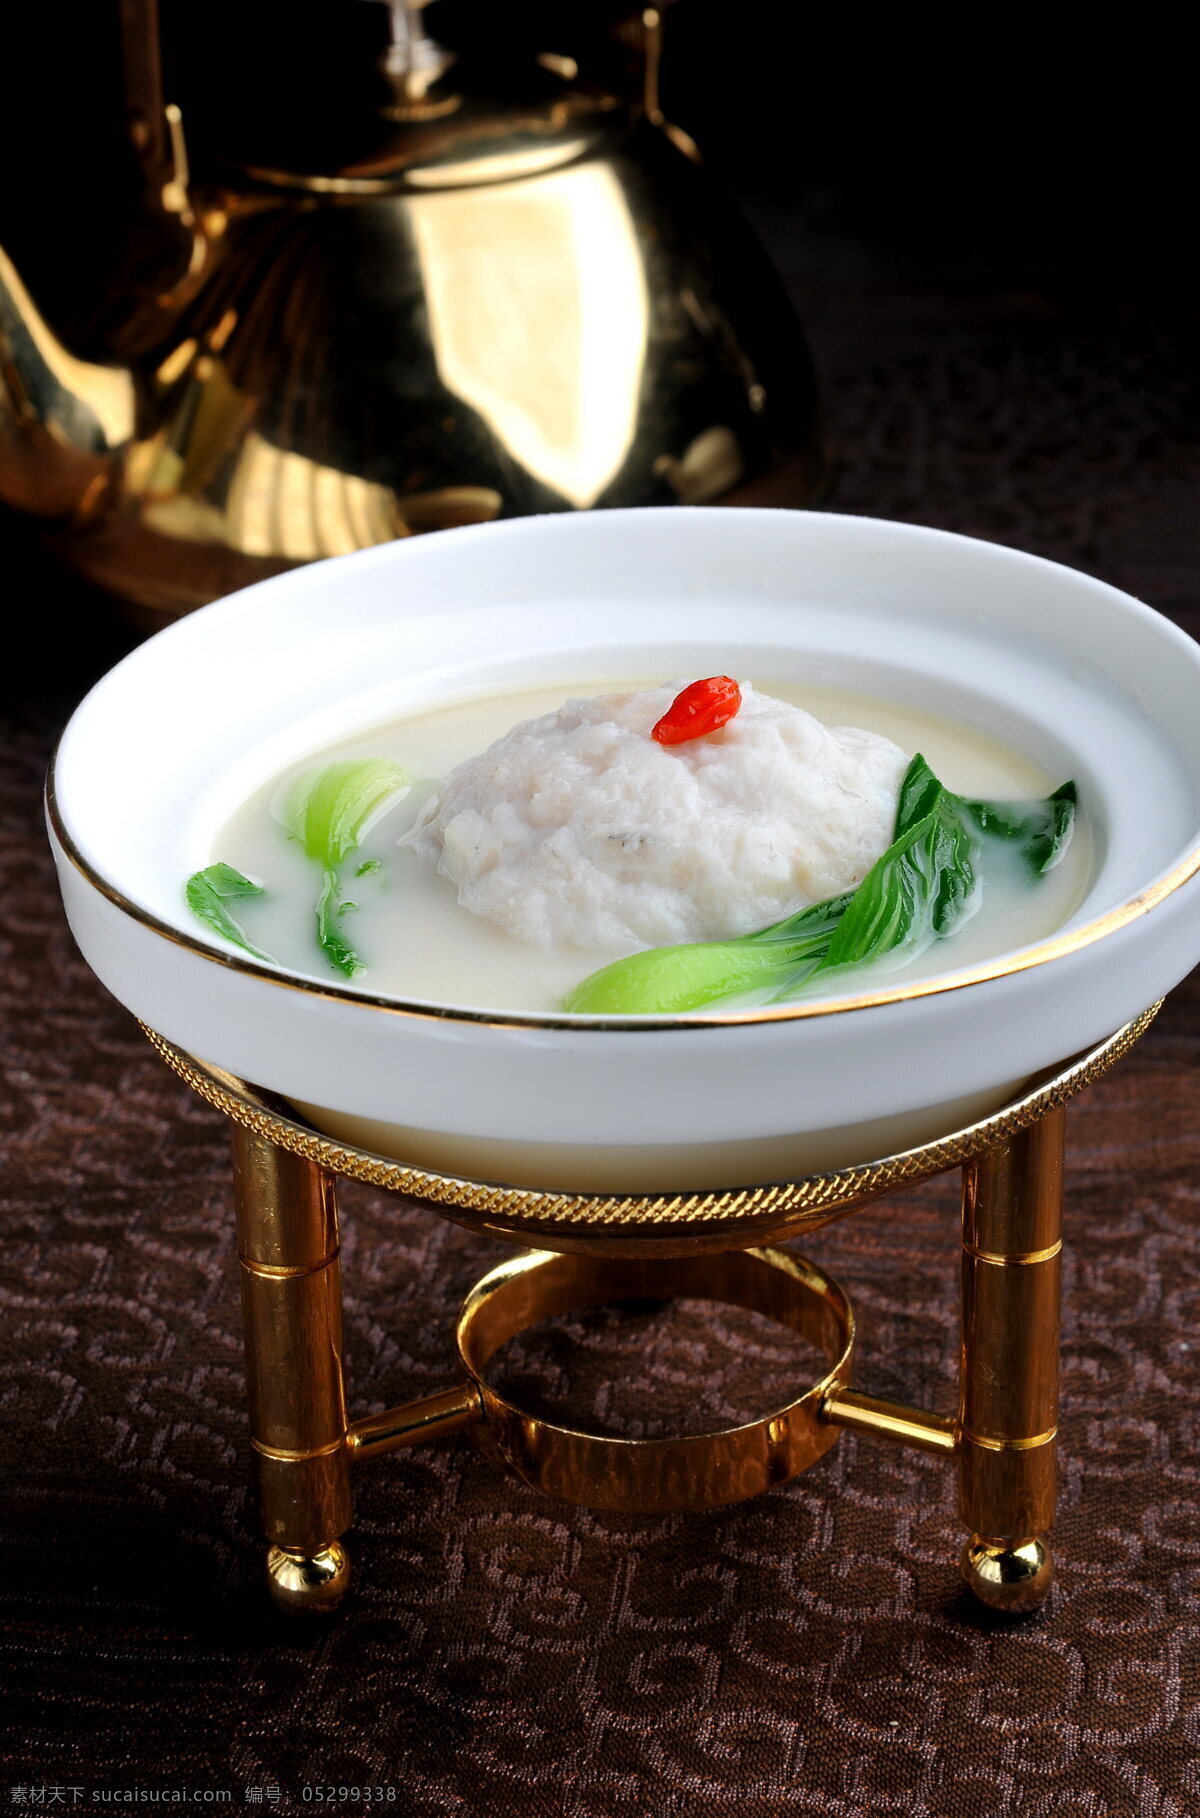 鱼 米 狮子头 餐饮美食 传统美食 鱼米狮子头 浓汤 淮扬菜 矢量图 日常生活